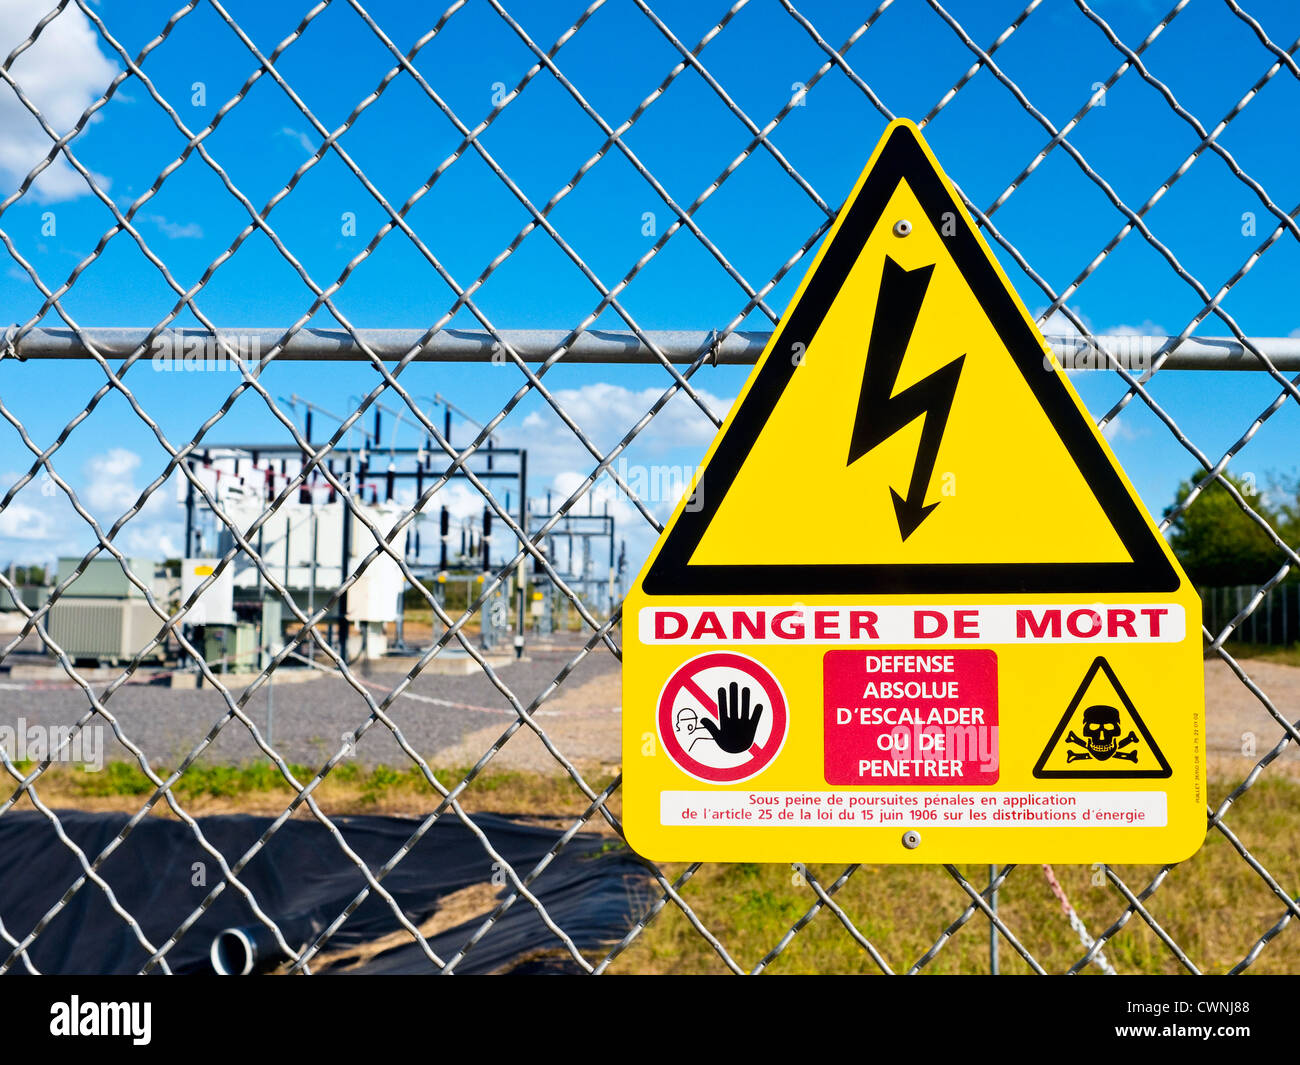 'Danger de Mort' / Deadly Danger warning sign at electricity sub-station - France. Stock Photo